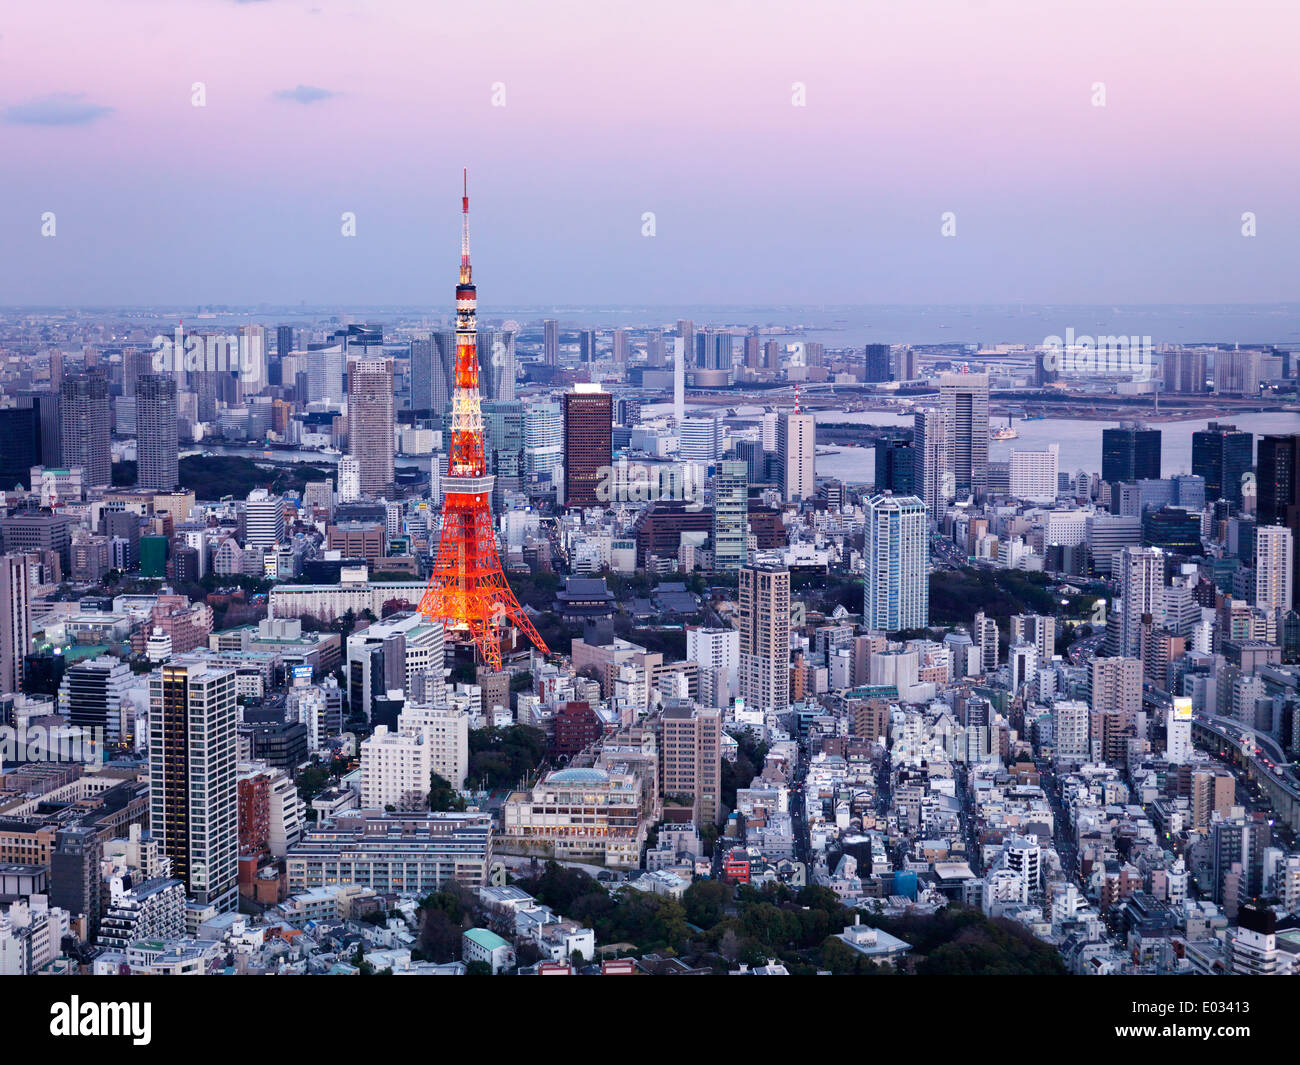 Führerschein verfügbar unter MaximImages.com - leuchtend roter Tokyo Tower in Stadtlandschaft aus der Vogelperspektive, künstlerisches Foto in der Dämmerung. Tokio, Japan. Stockfoto